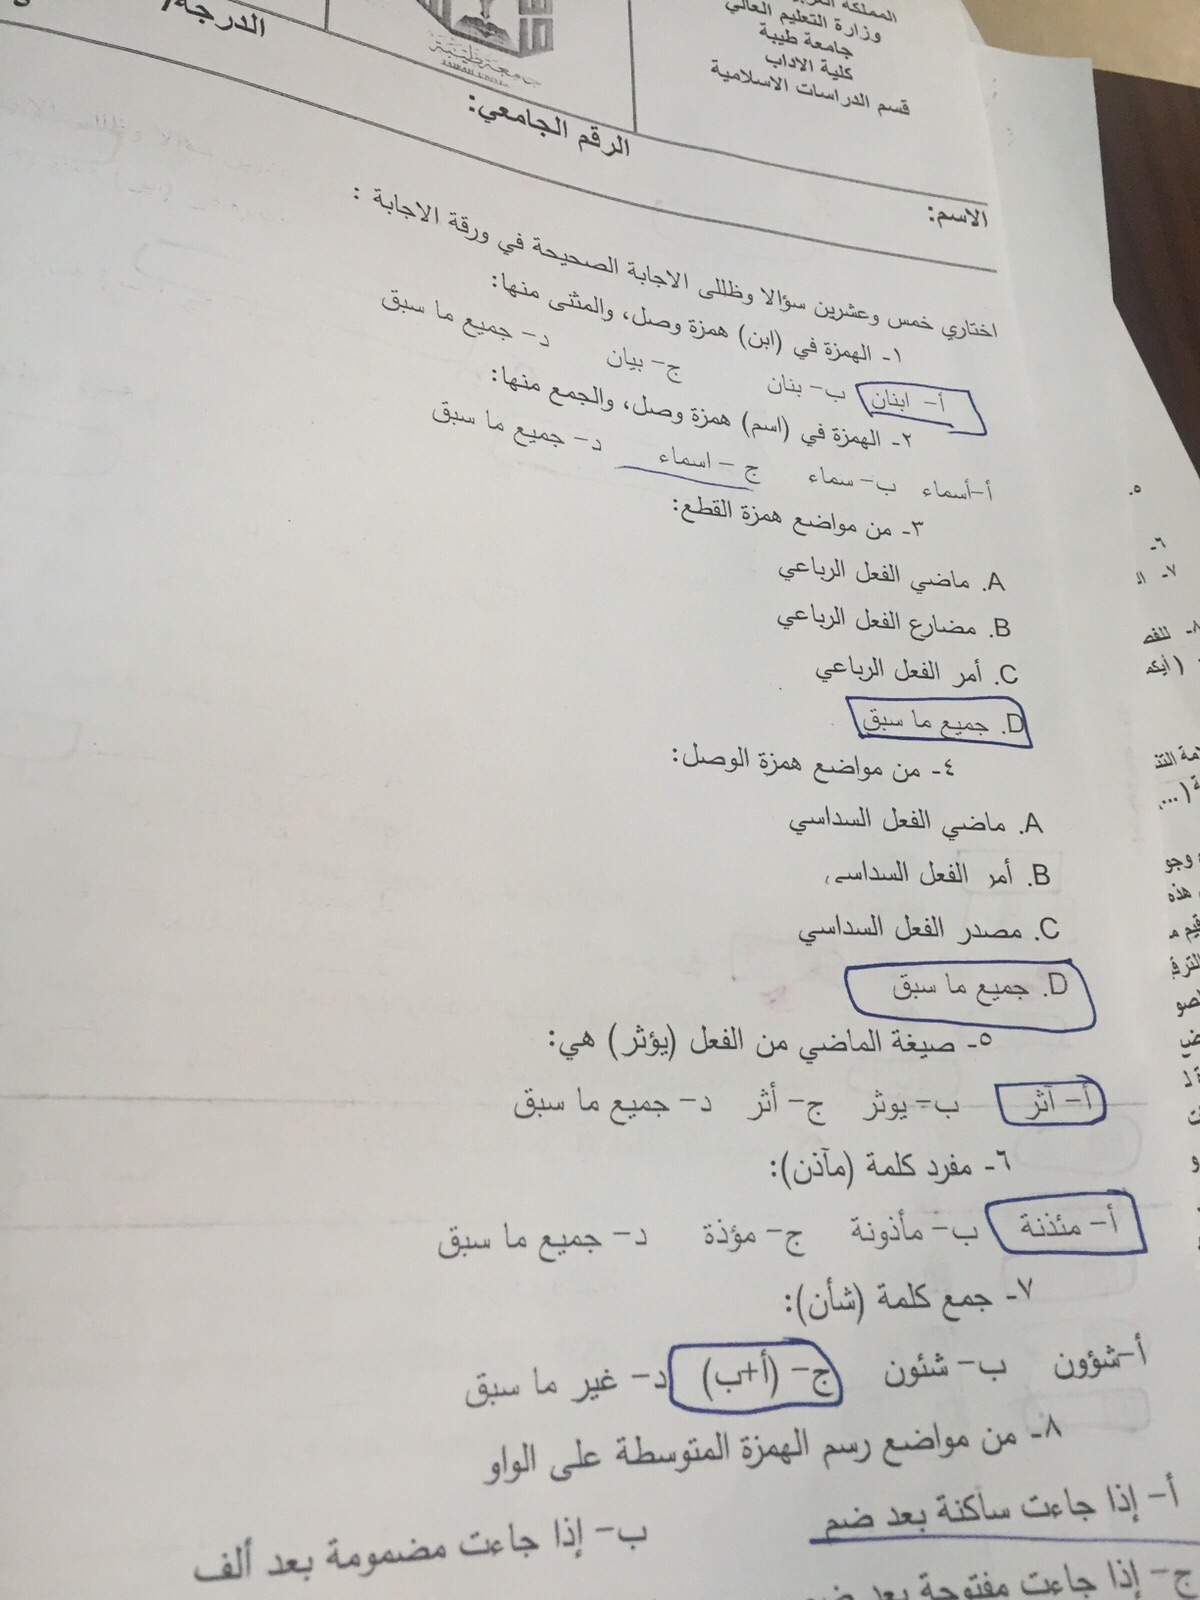 اسئلة اختبار مهارات اللغة العربية 2 الفصل الأول 1437هـ